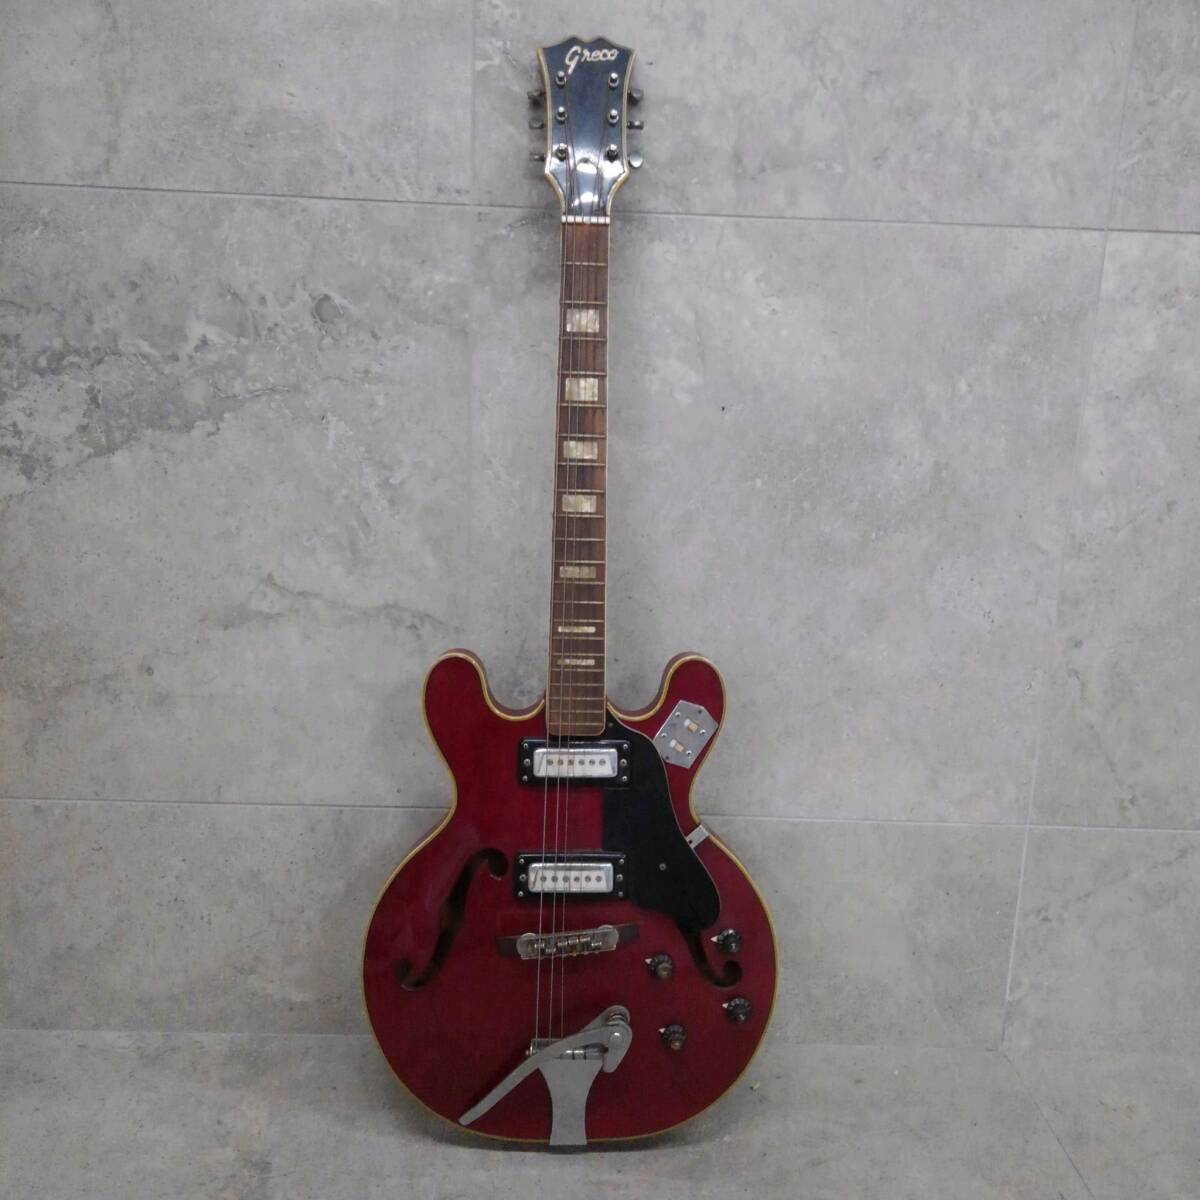 H29036(043)-828/MY15000 Greco グレコ ビグスビー エレキギター の画像1